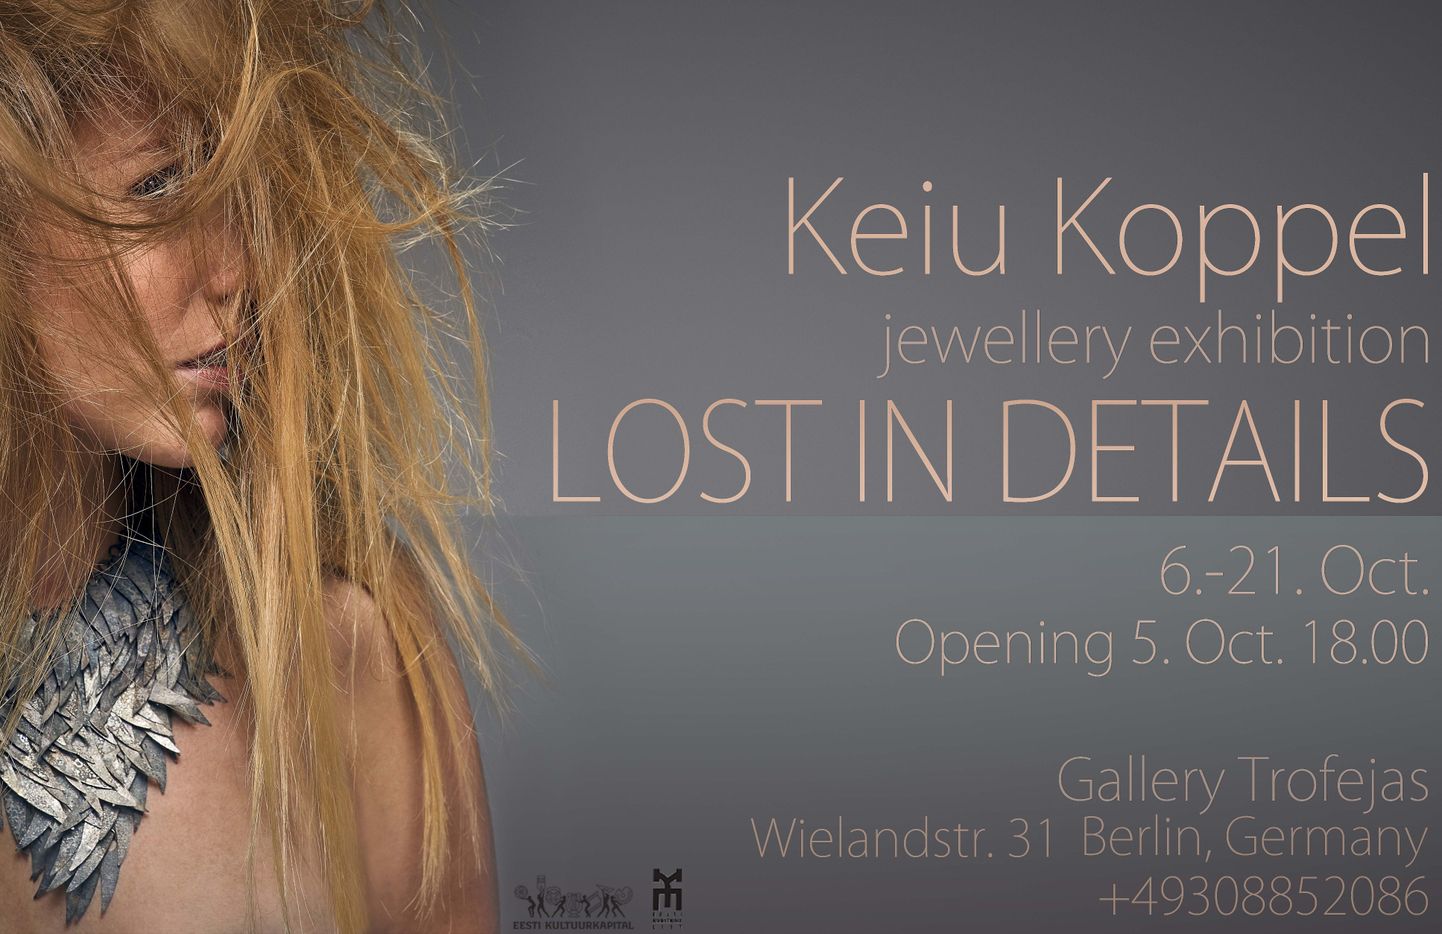 Ehtekunstnik Keiu Koppel avab näituse Berliinis